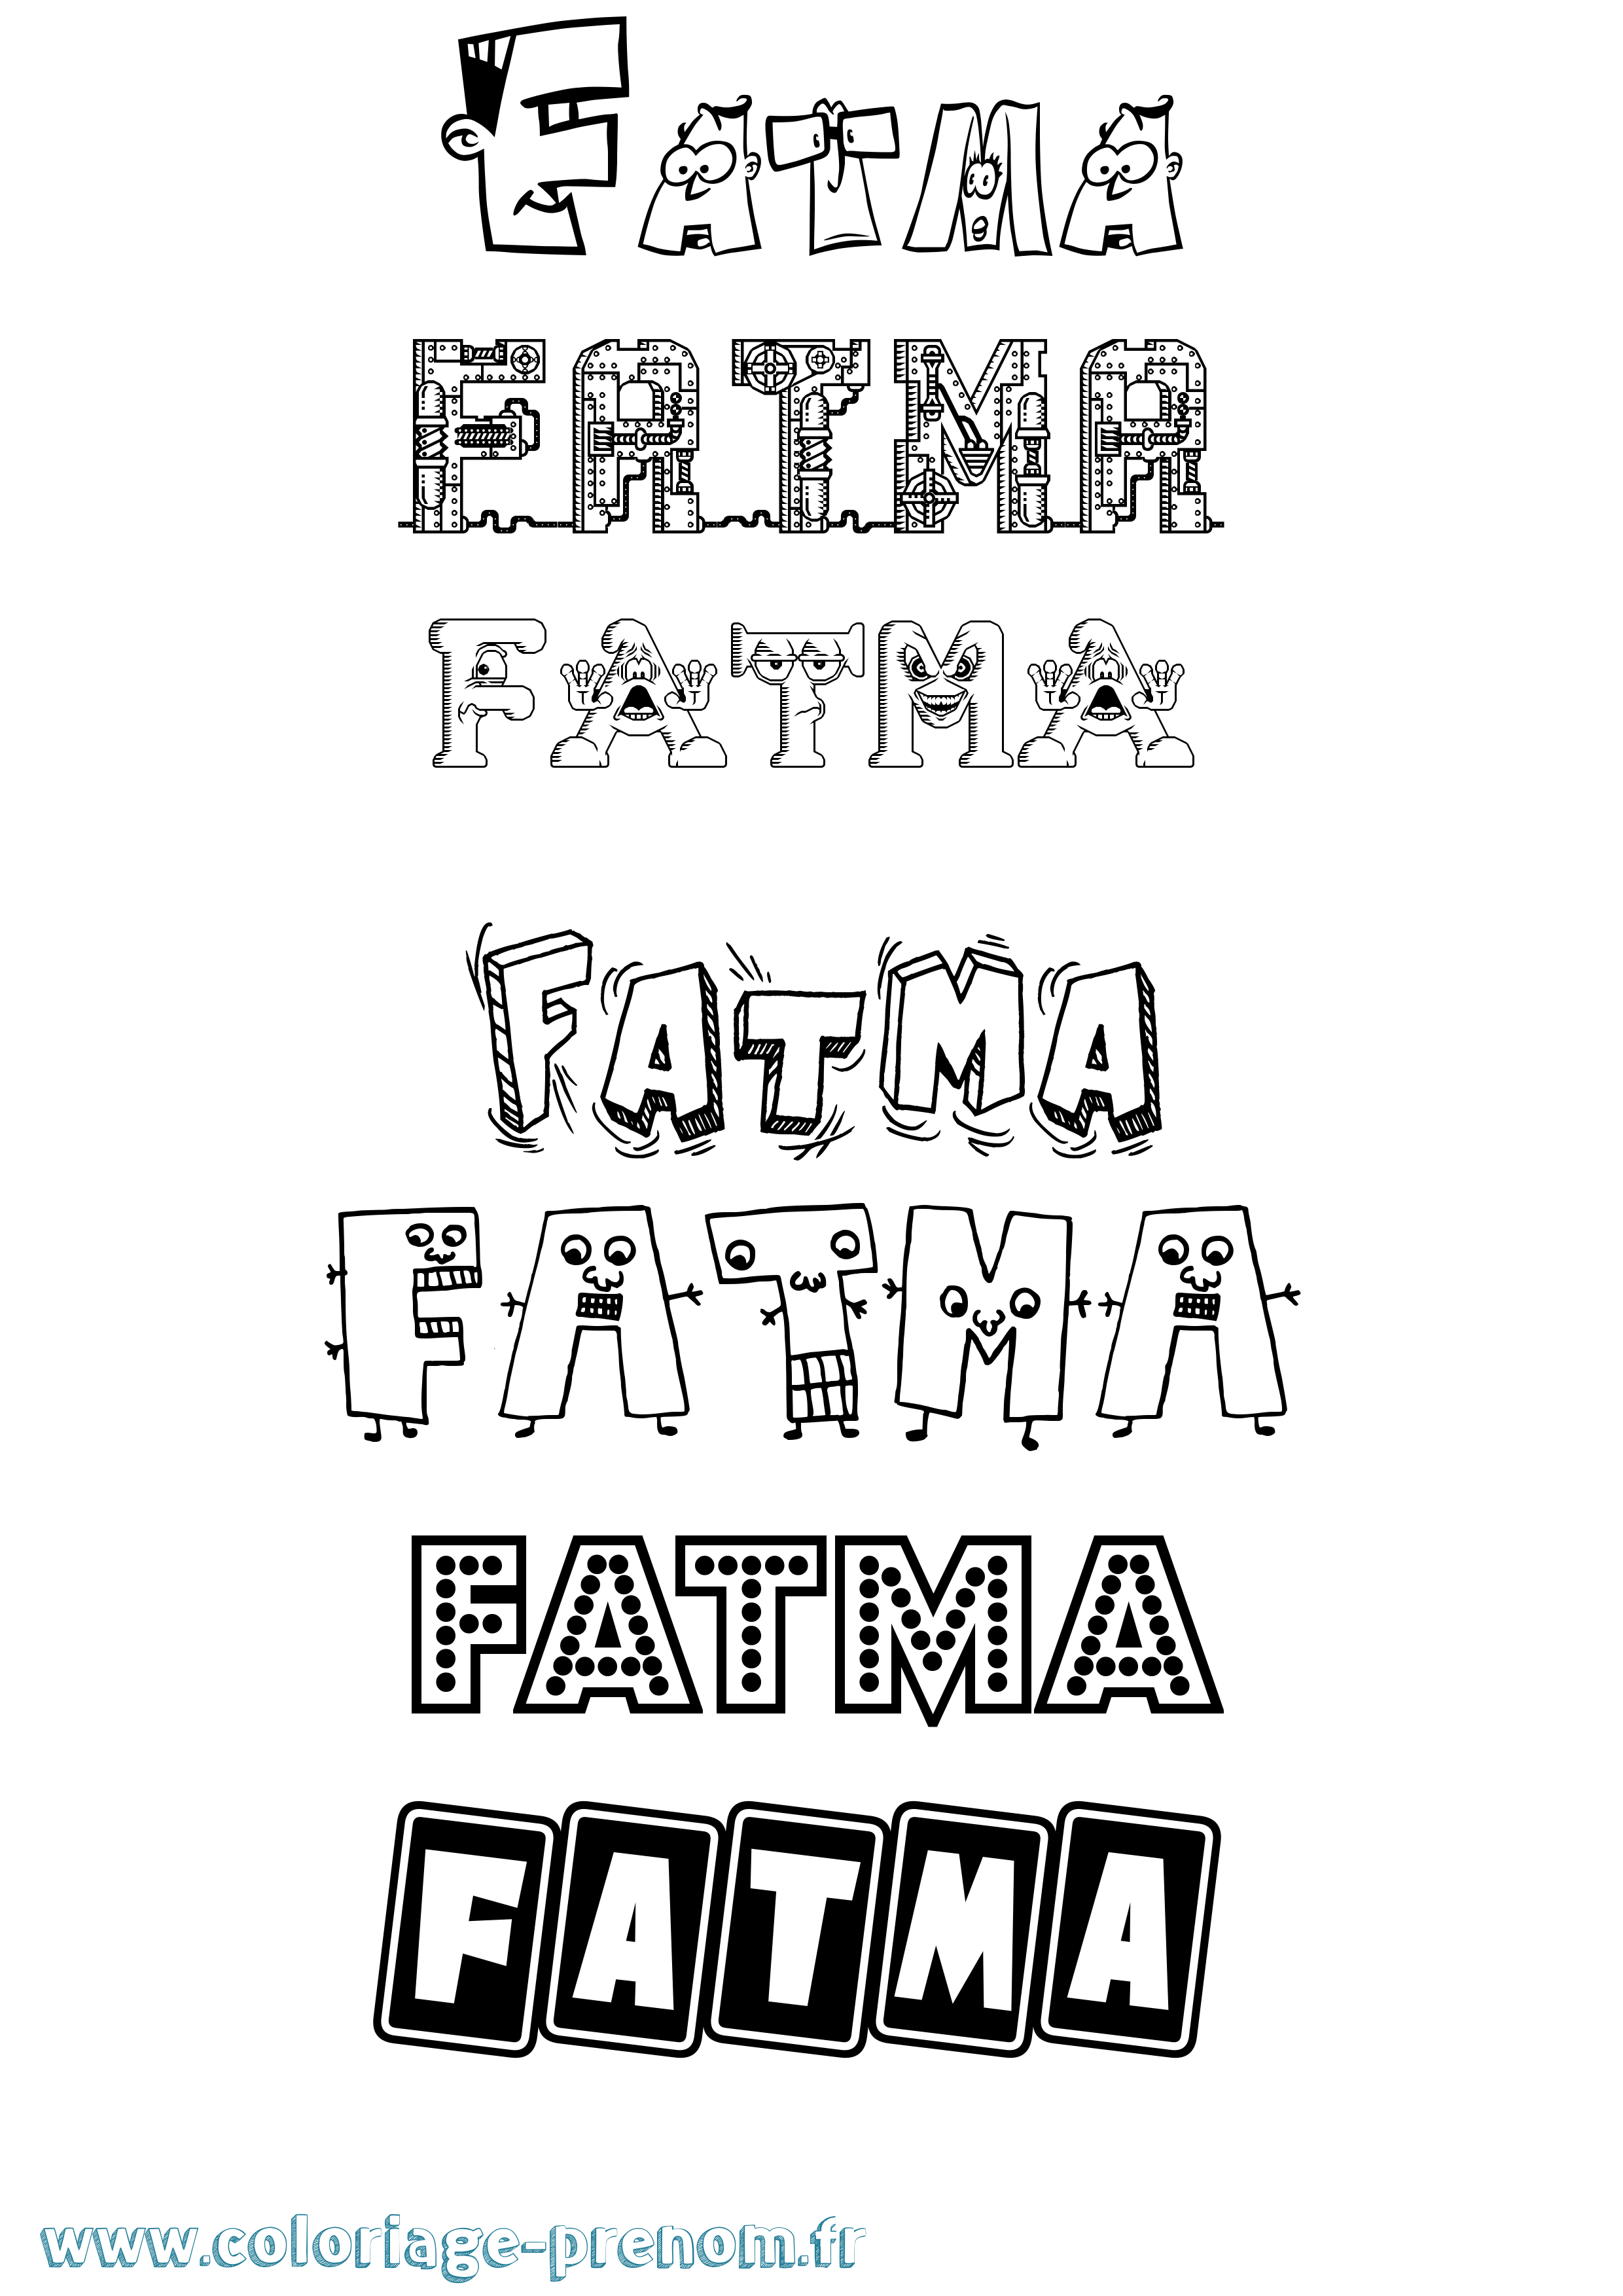 Coloriage prénom Fatma Fun